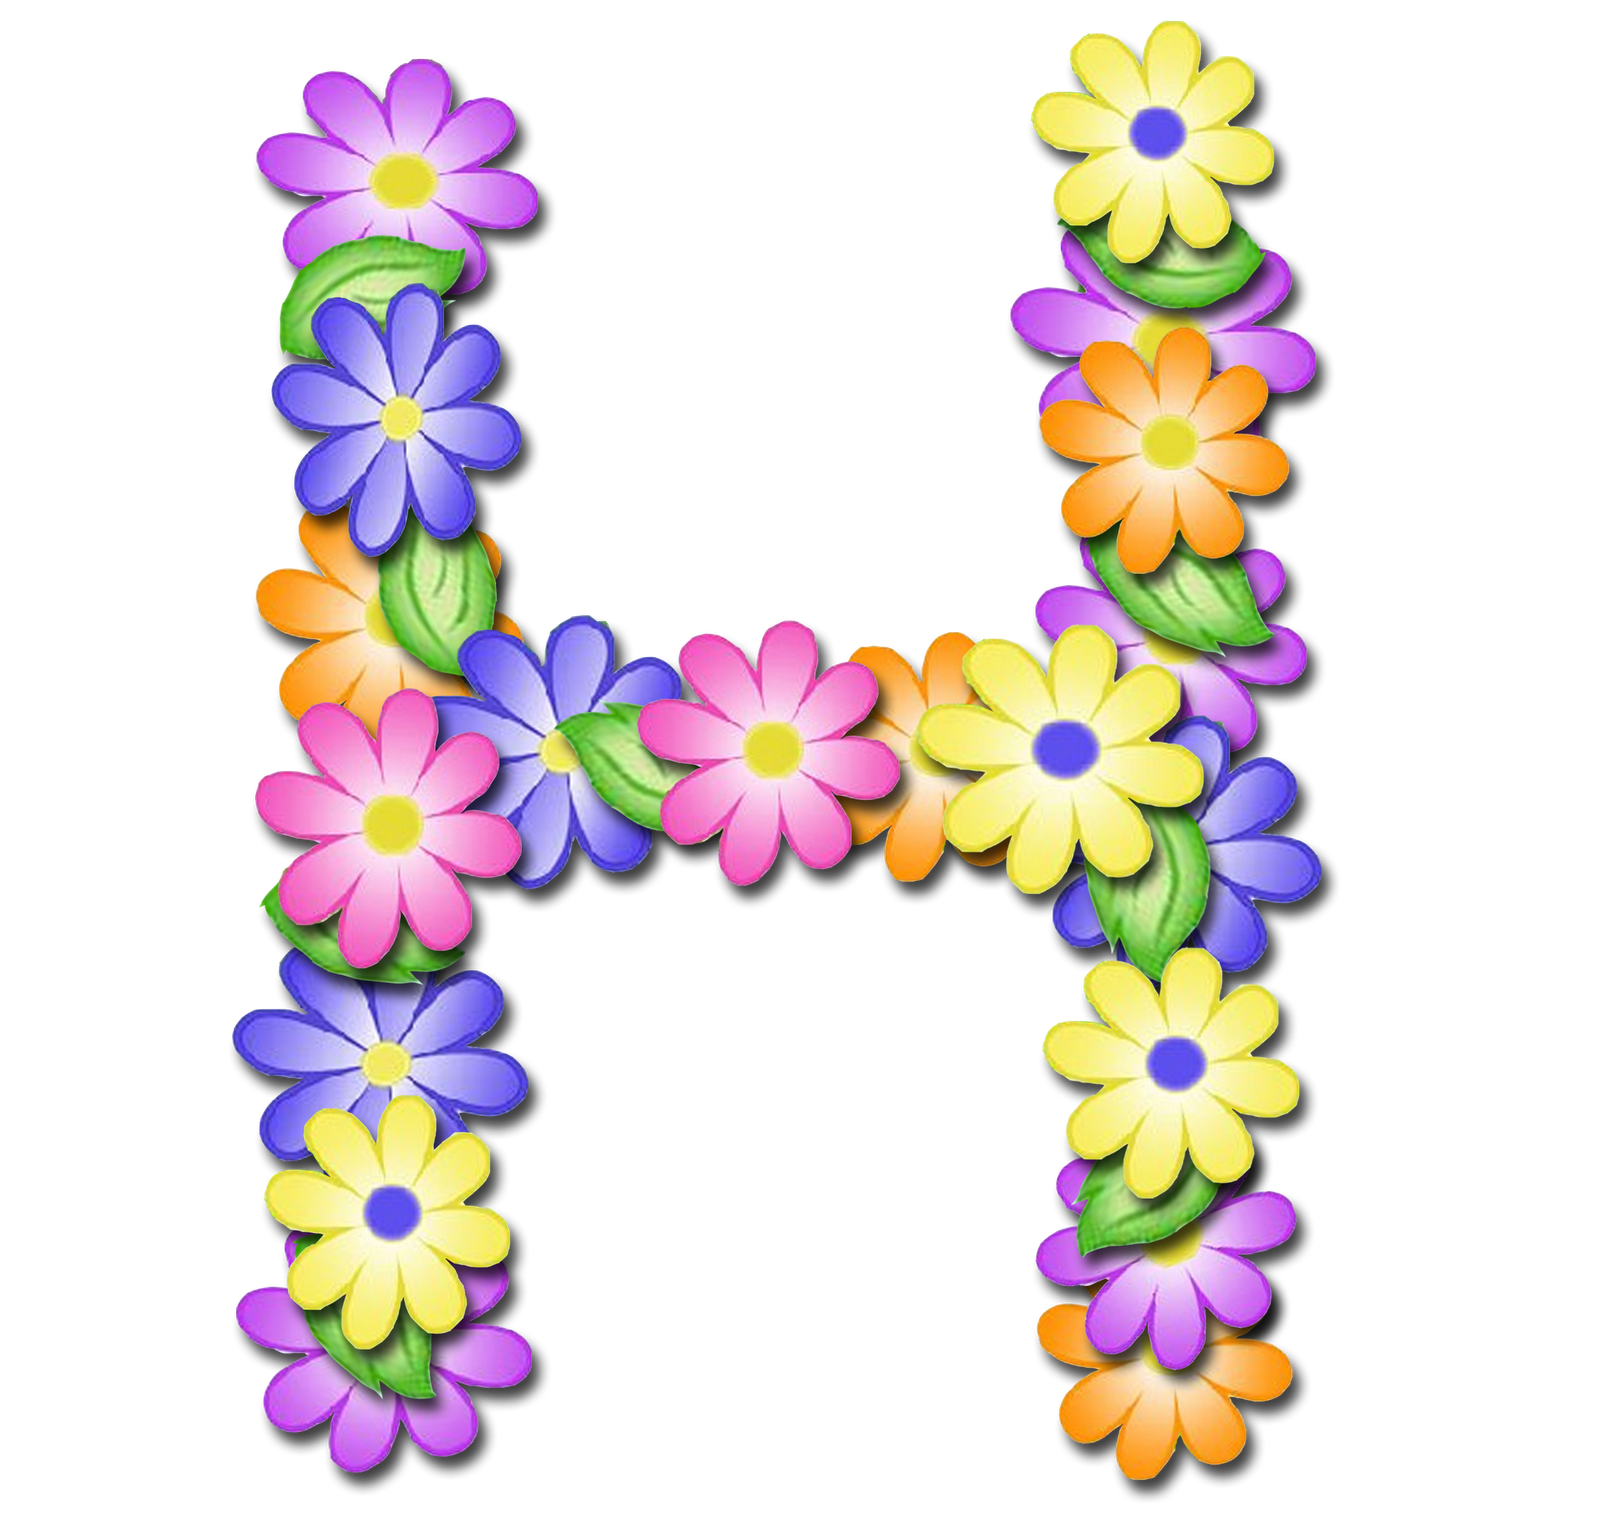 صور الحروف الإنجليزية بأجمل الزهور والورود بخلفية شفافة بنج png وجودة عالية للمصممين :: إبحث عن حروف إسمك بالإنجليزية P_1699bj2zg8